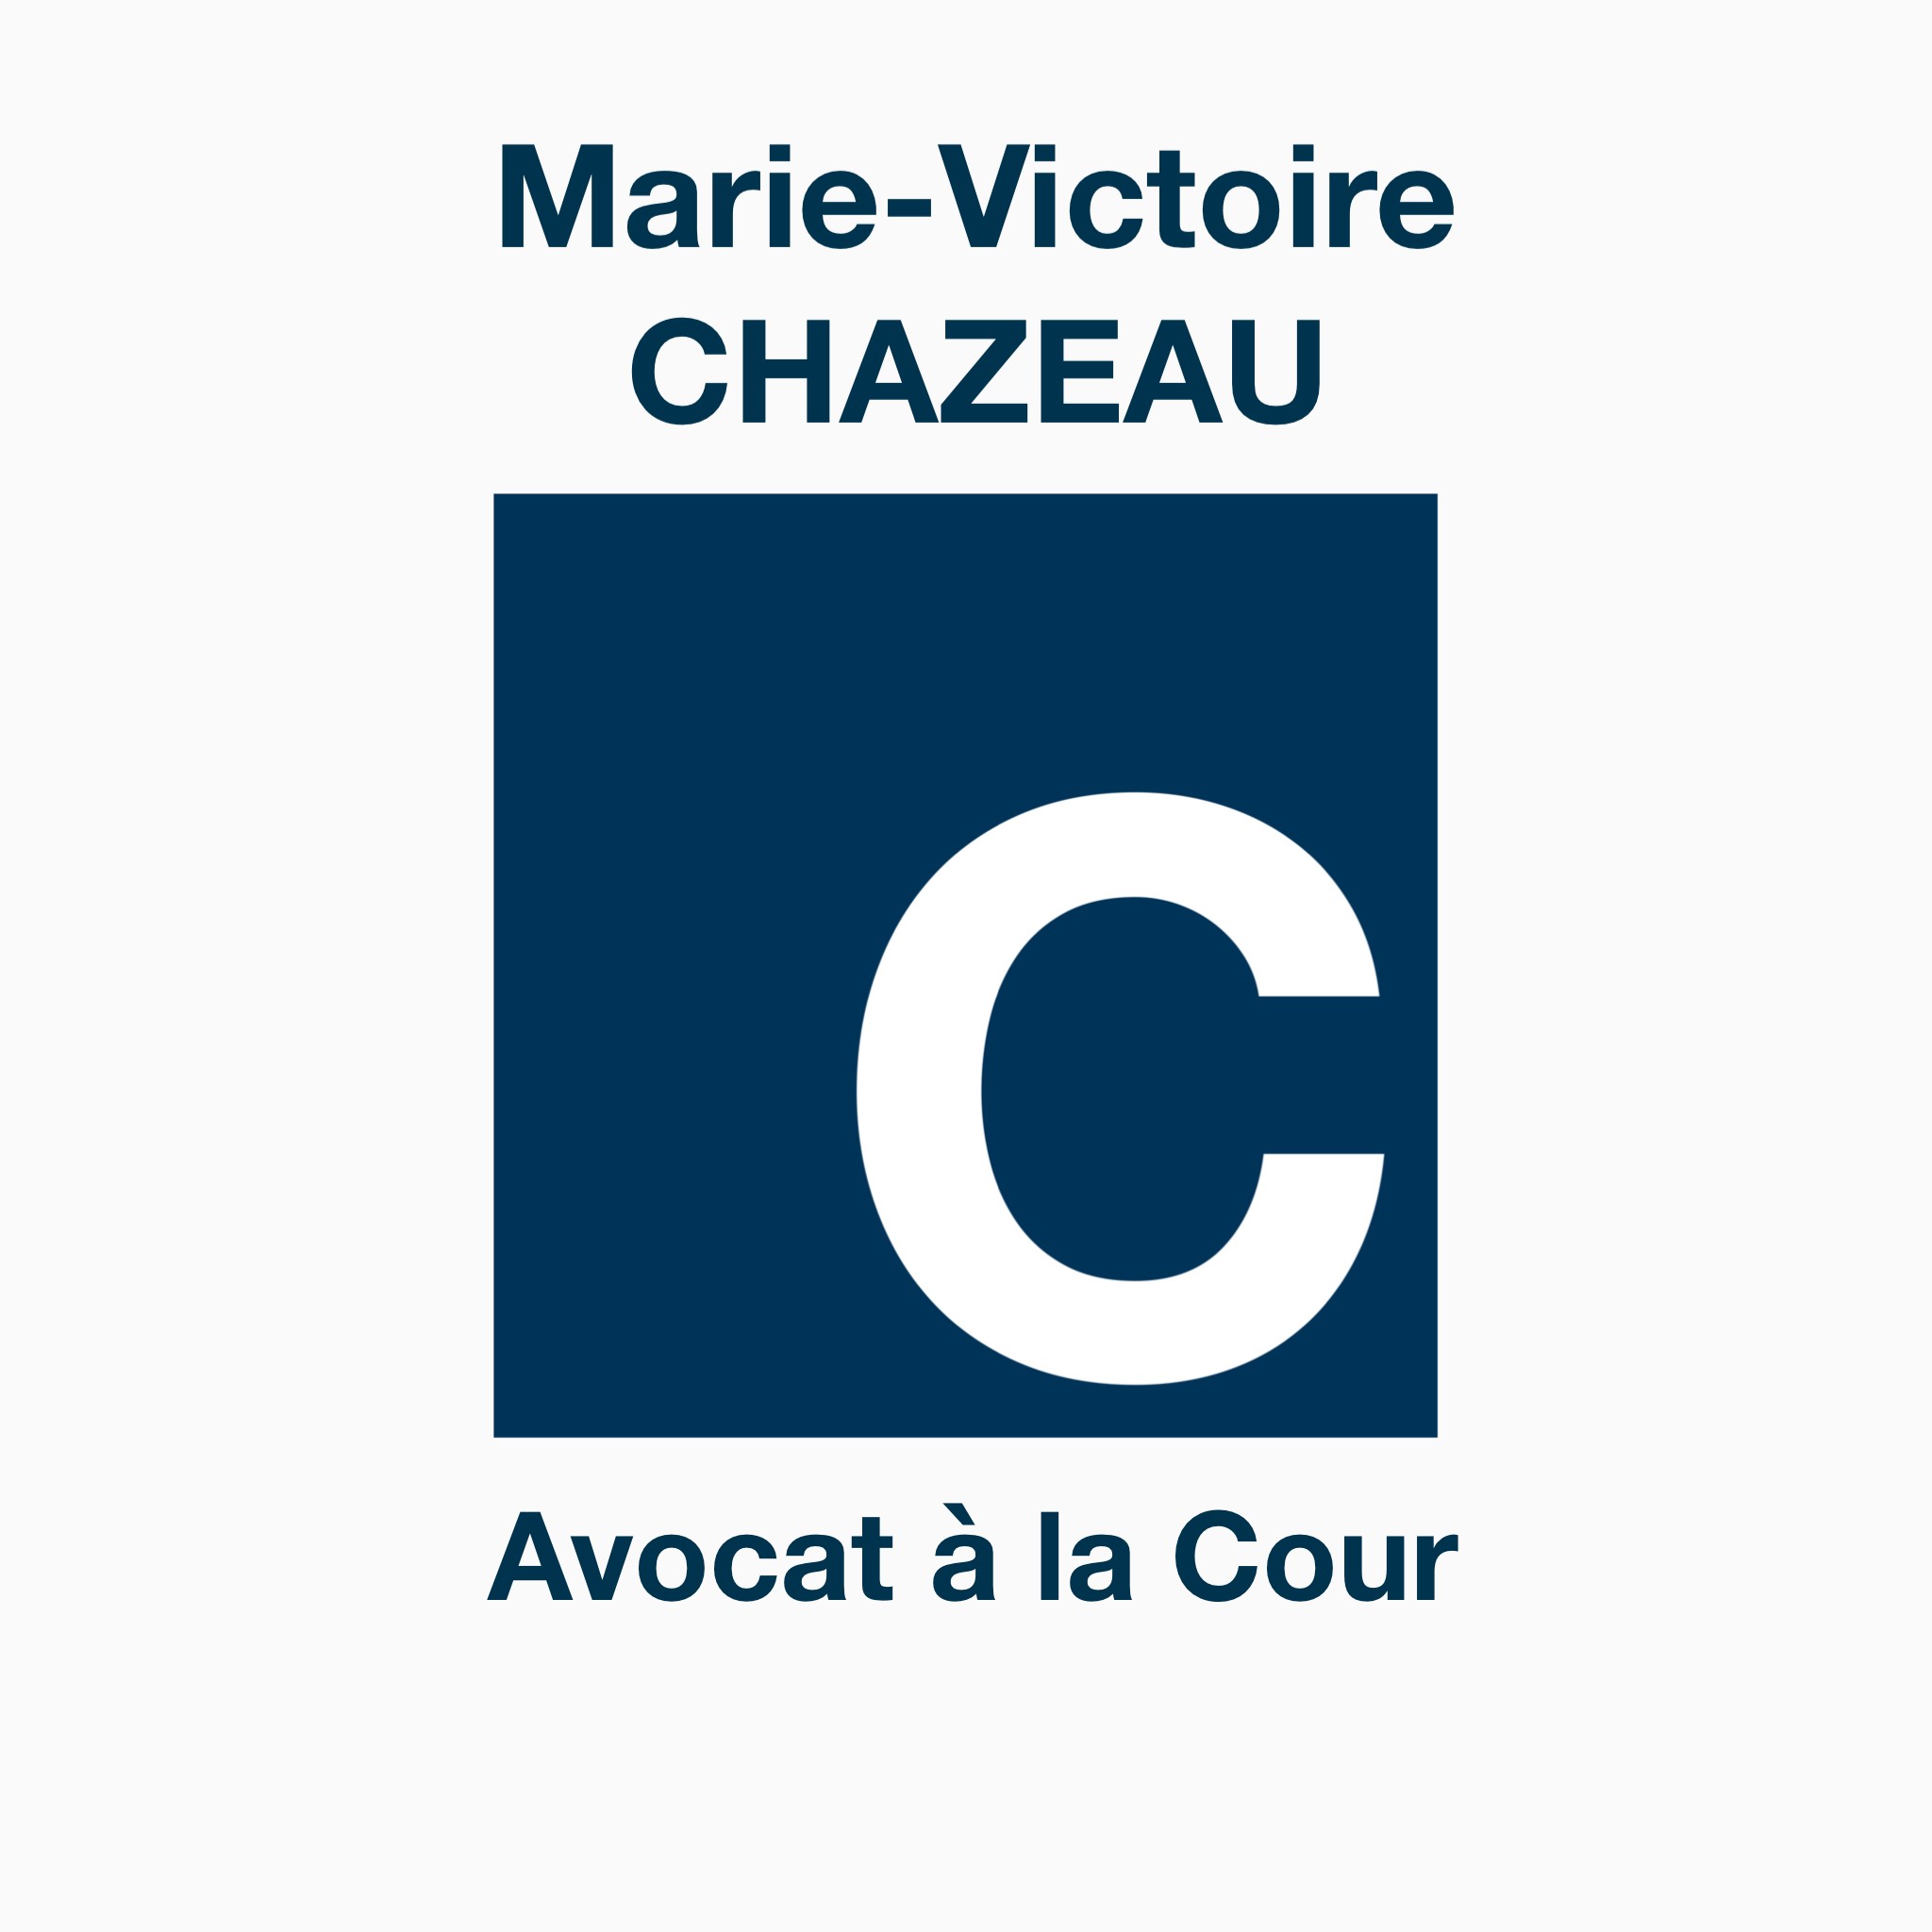 Marie-Victoire CHAZEAU